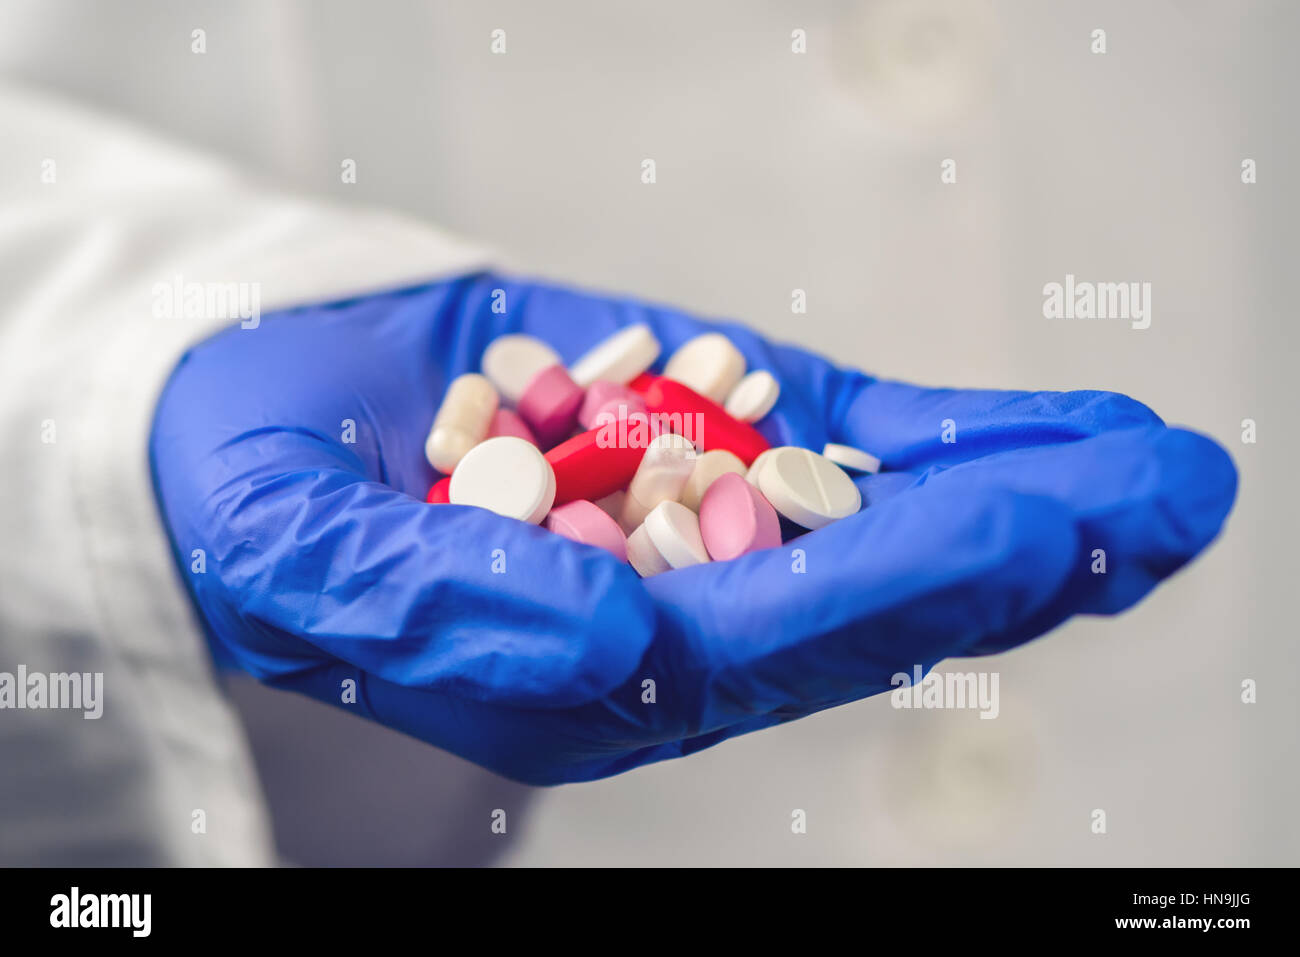 Doctora con la mano llena de diversas pastillas y medicamentos, cerca del profesional médico en bata blanca y guantes de protección Foto de stock